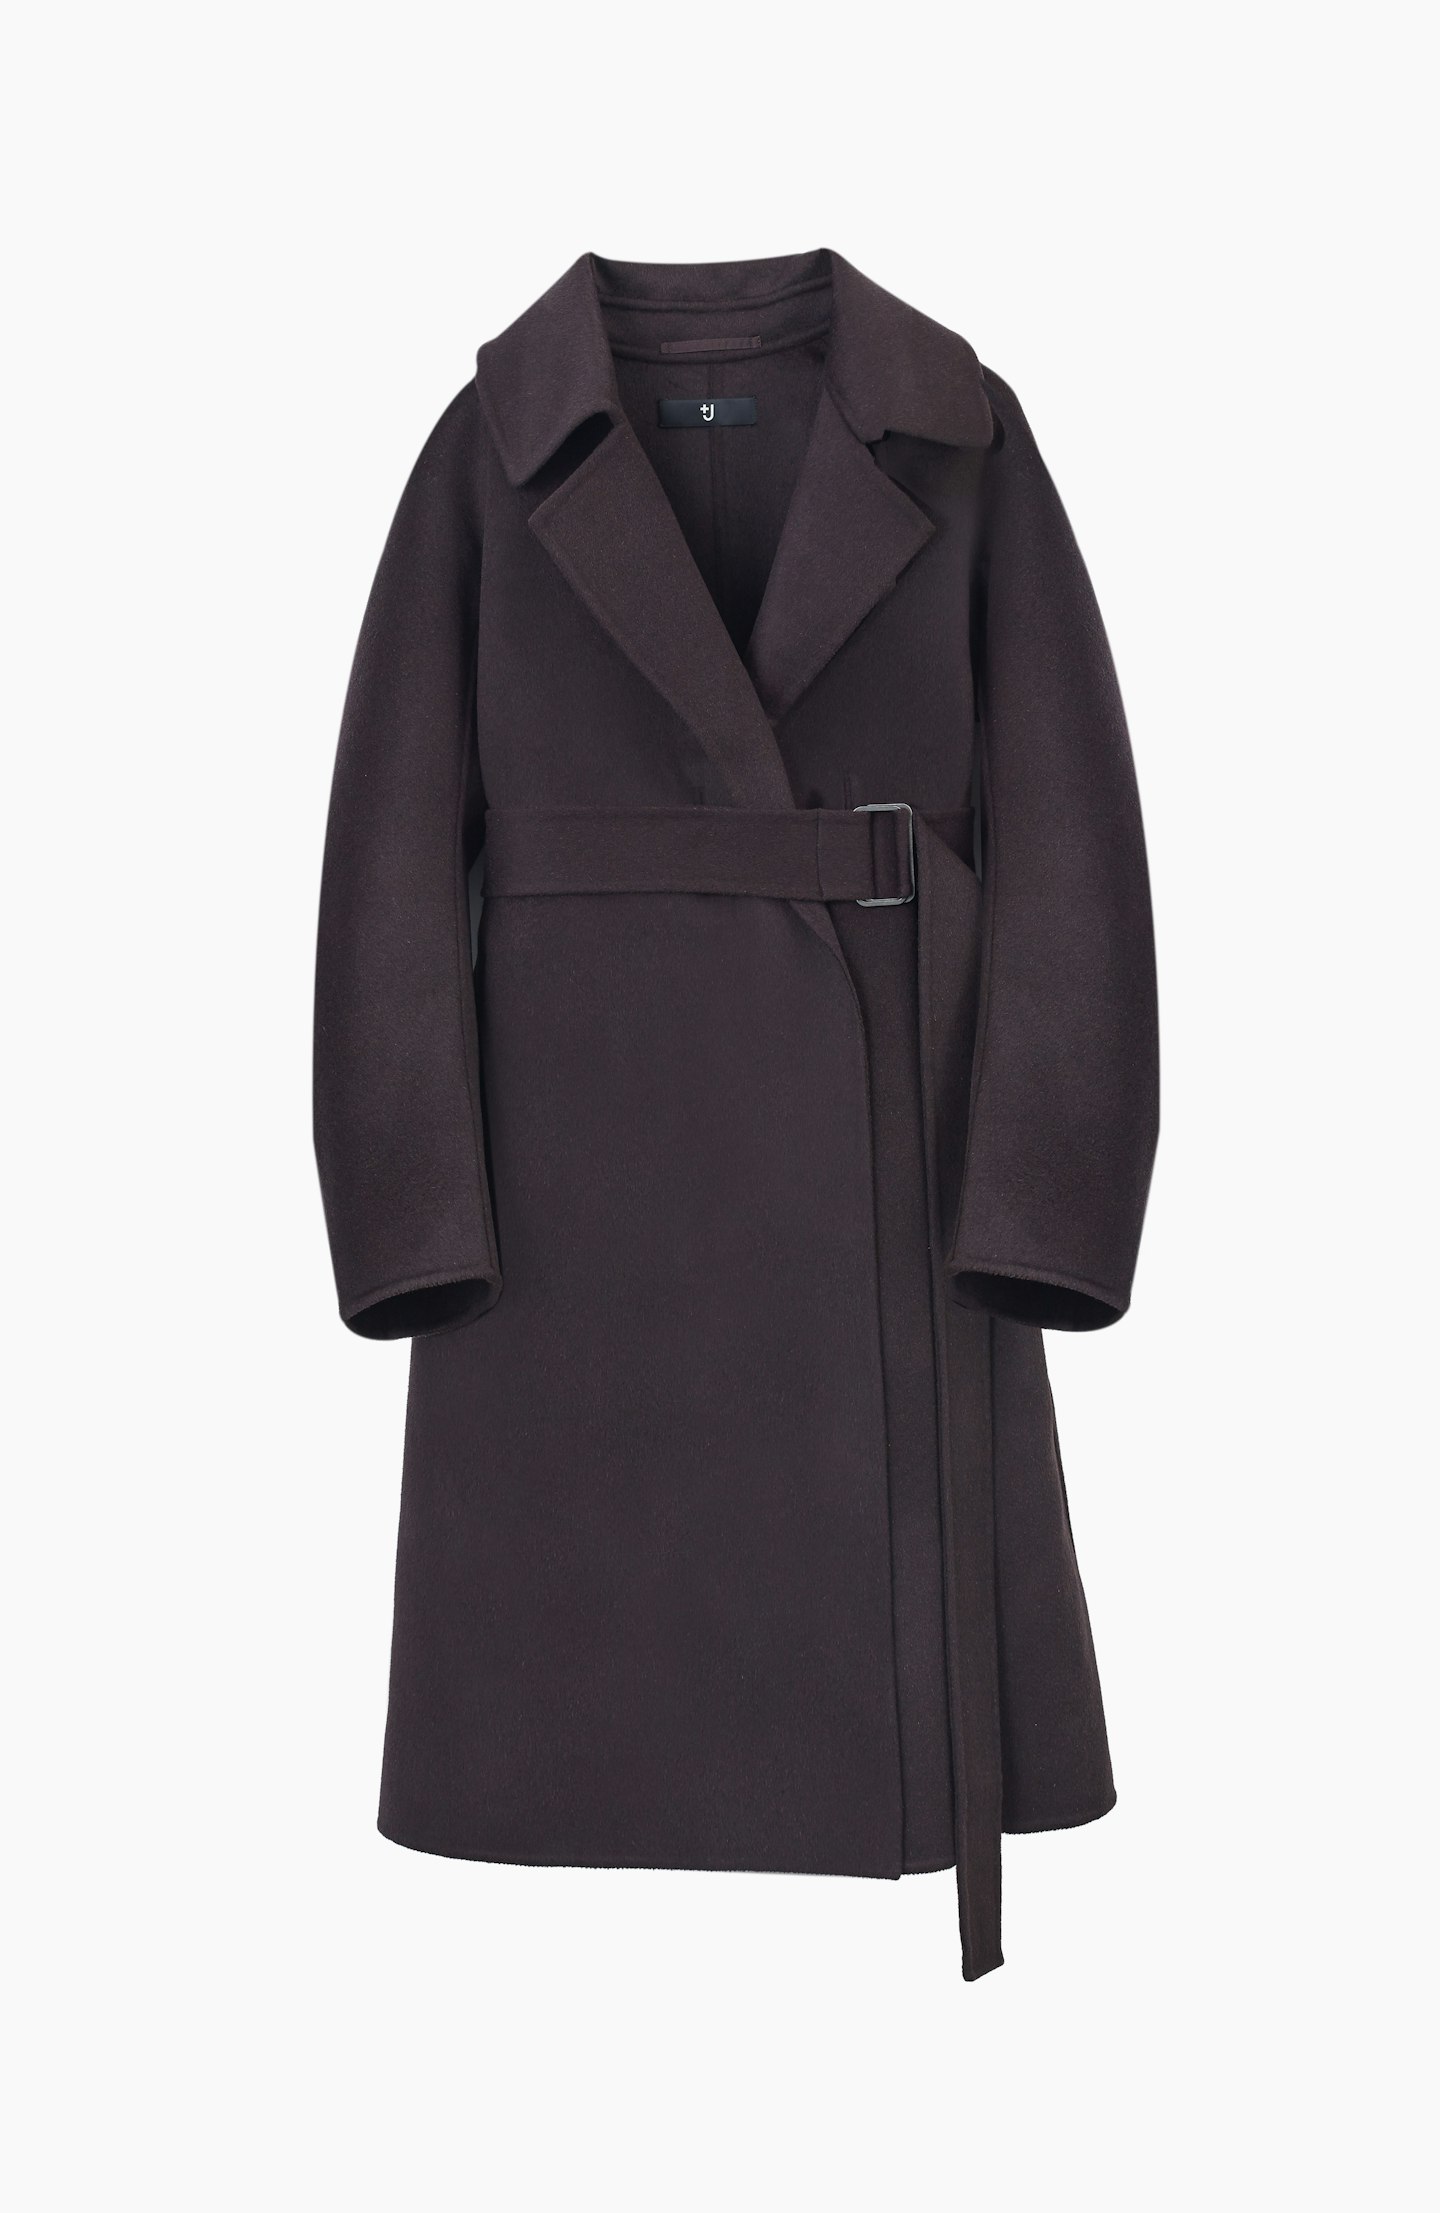 Cashmere-Blend Wrap Long Coat, £79.90